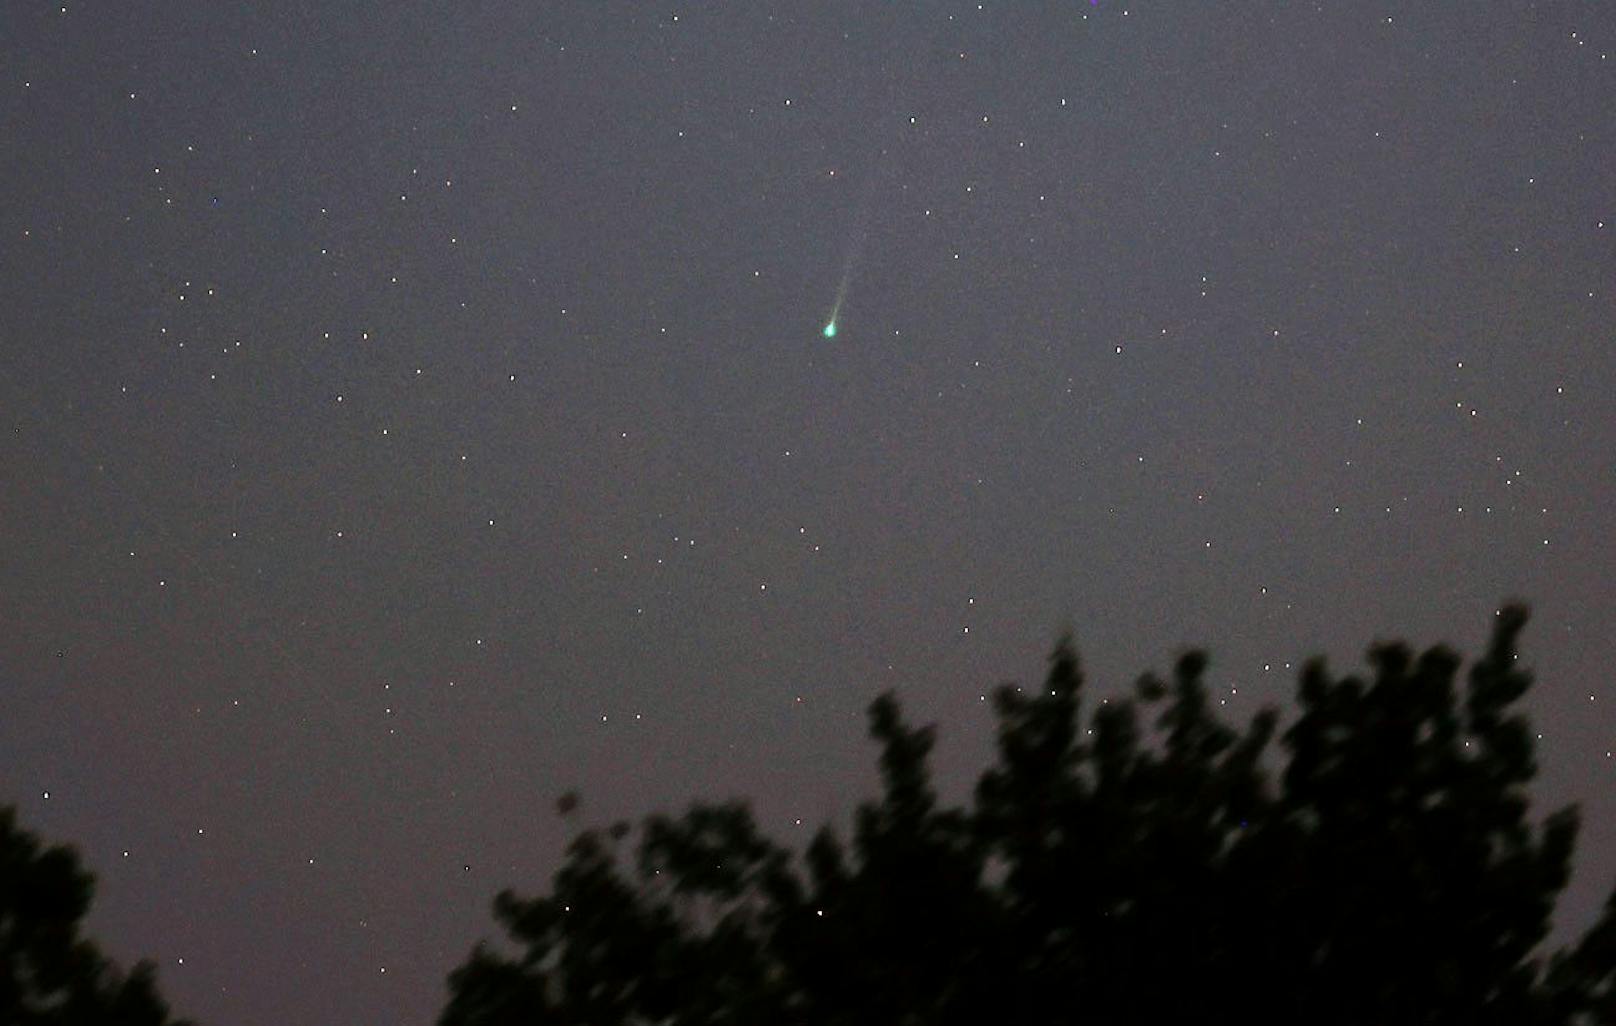 Am 8. September hat der Komet eine Helligkeit von 4,8 mag erreicht, was ausreicht, um ihn ohne Teleskop zu beobachten. Der Komet wird einige Stunden vor Sonnenaufgang im Sternbild Löwe sichtbar sein. In den kommenden Tagen wird er noch heller werden.